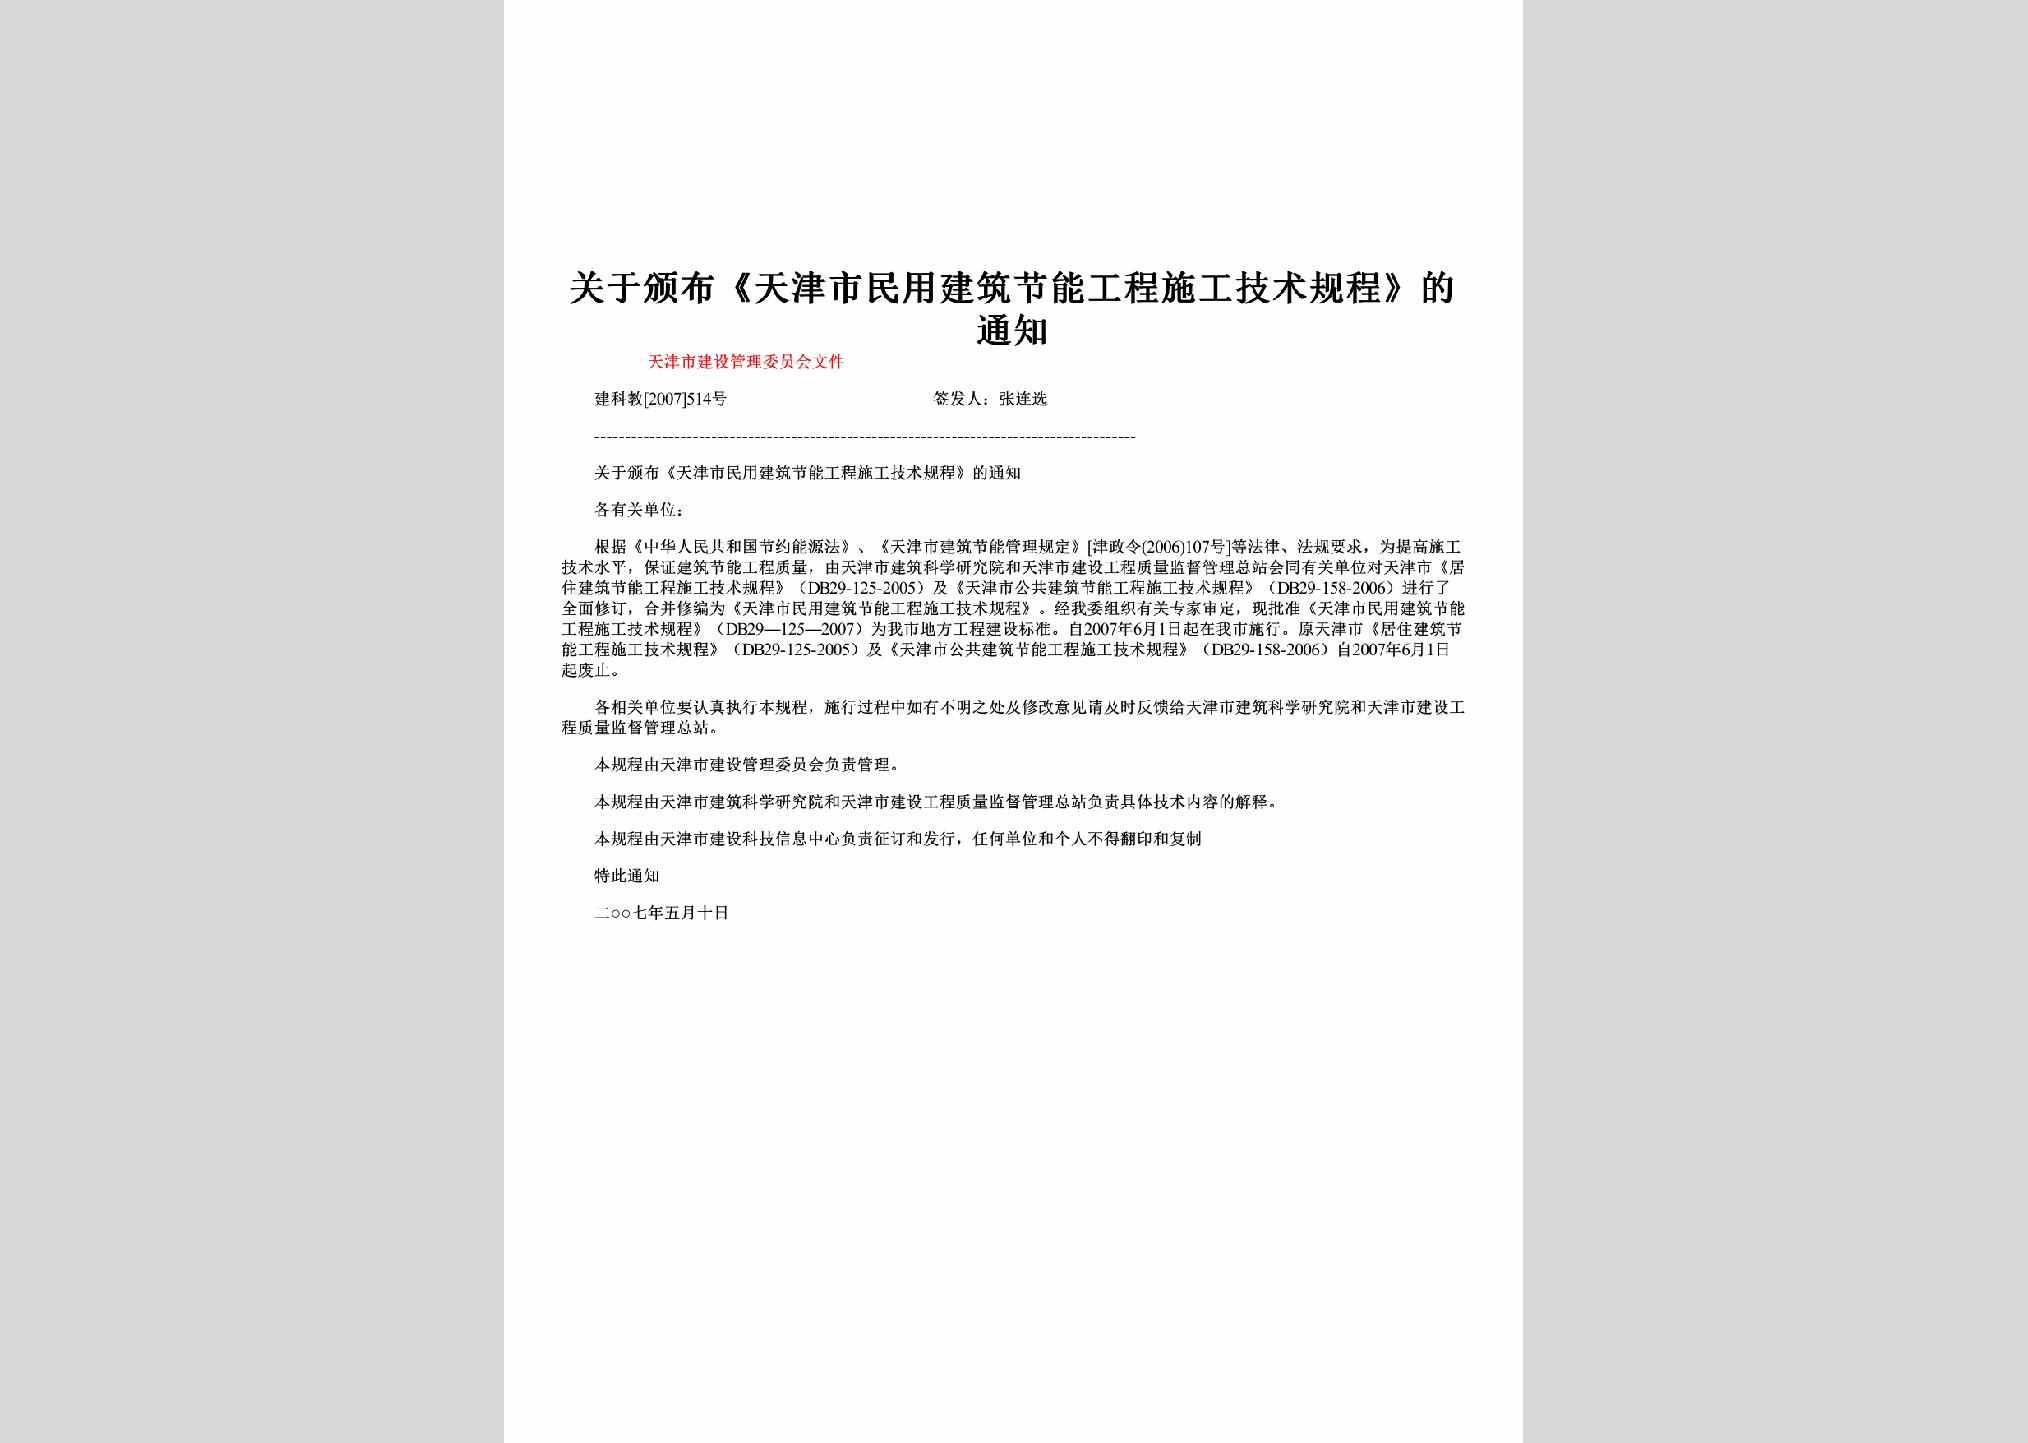 建科教[2007]514号：关于颁布《天津市民用建筑节能工程施工技术规程》的通知